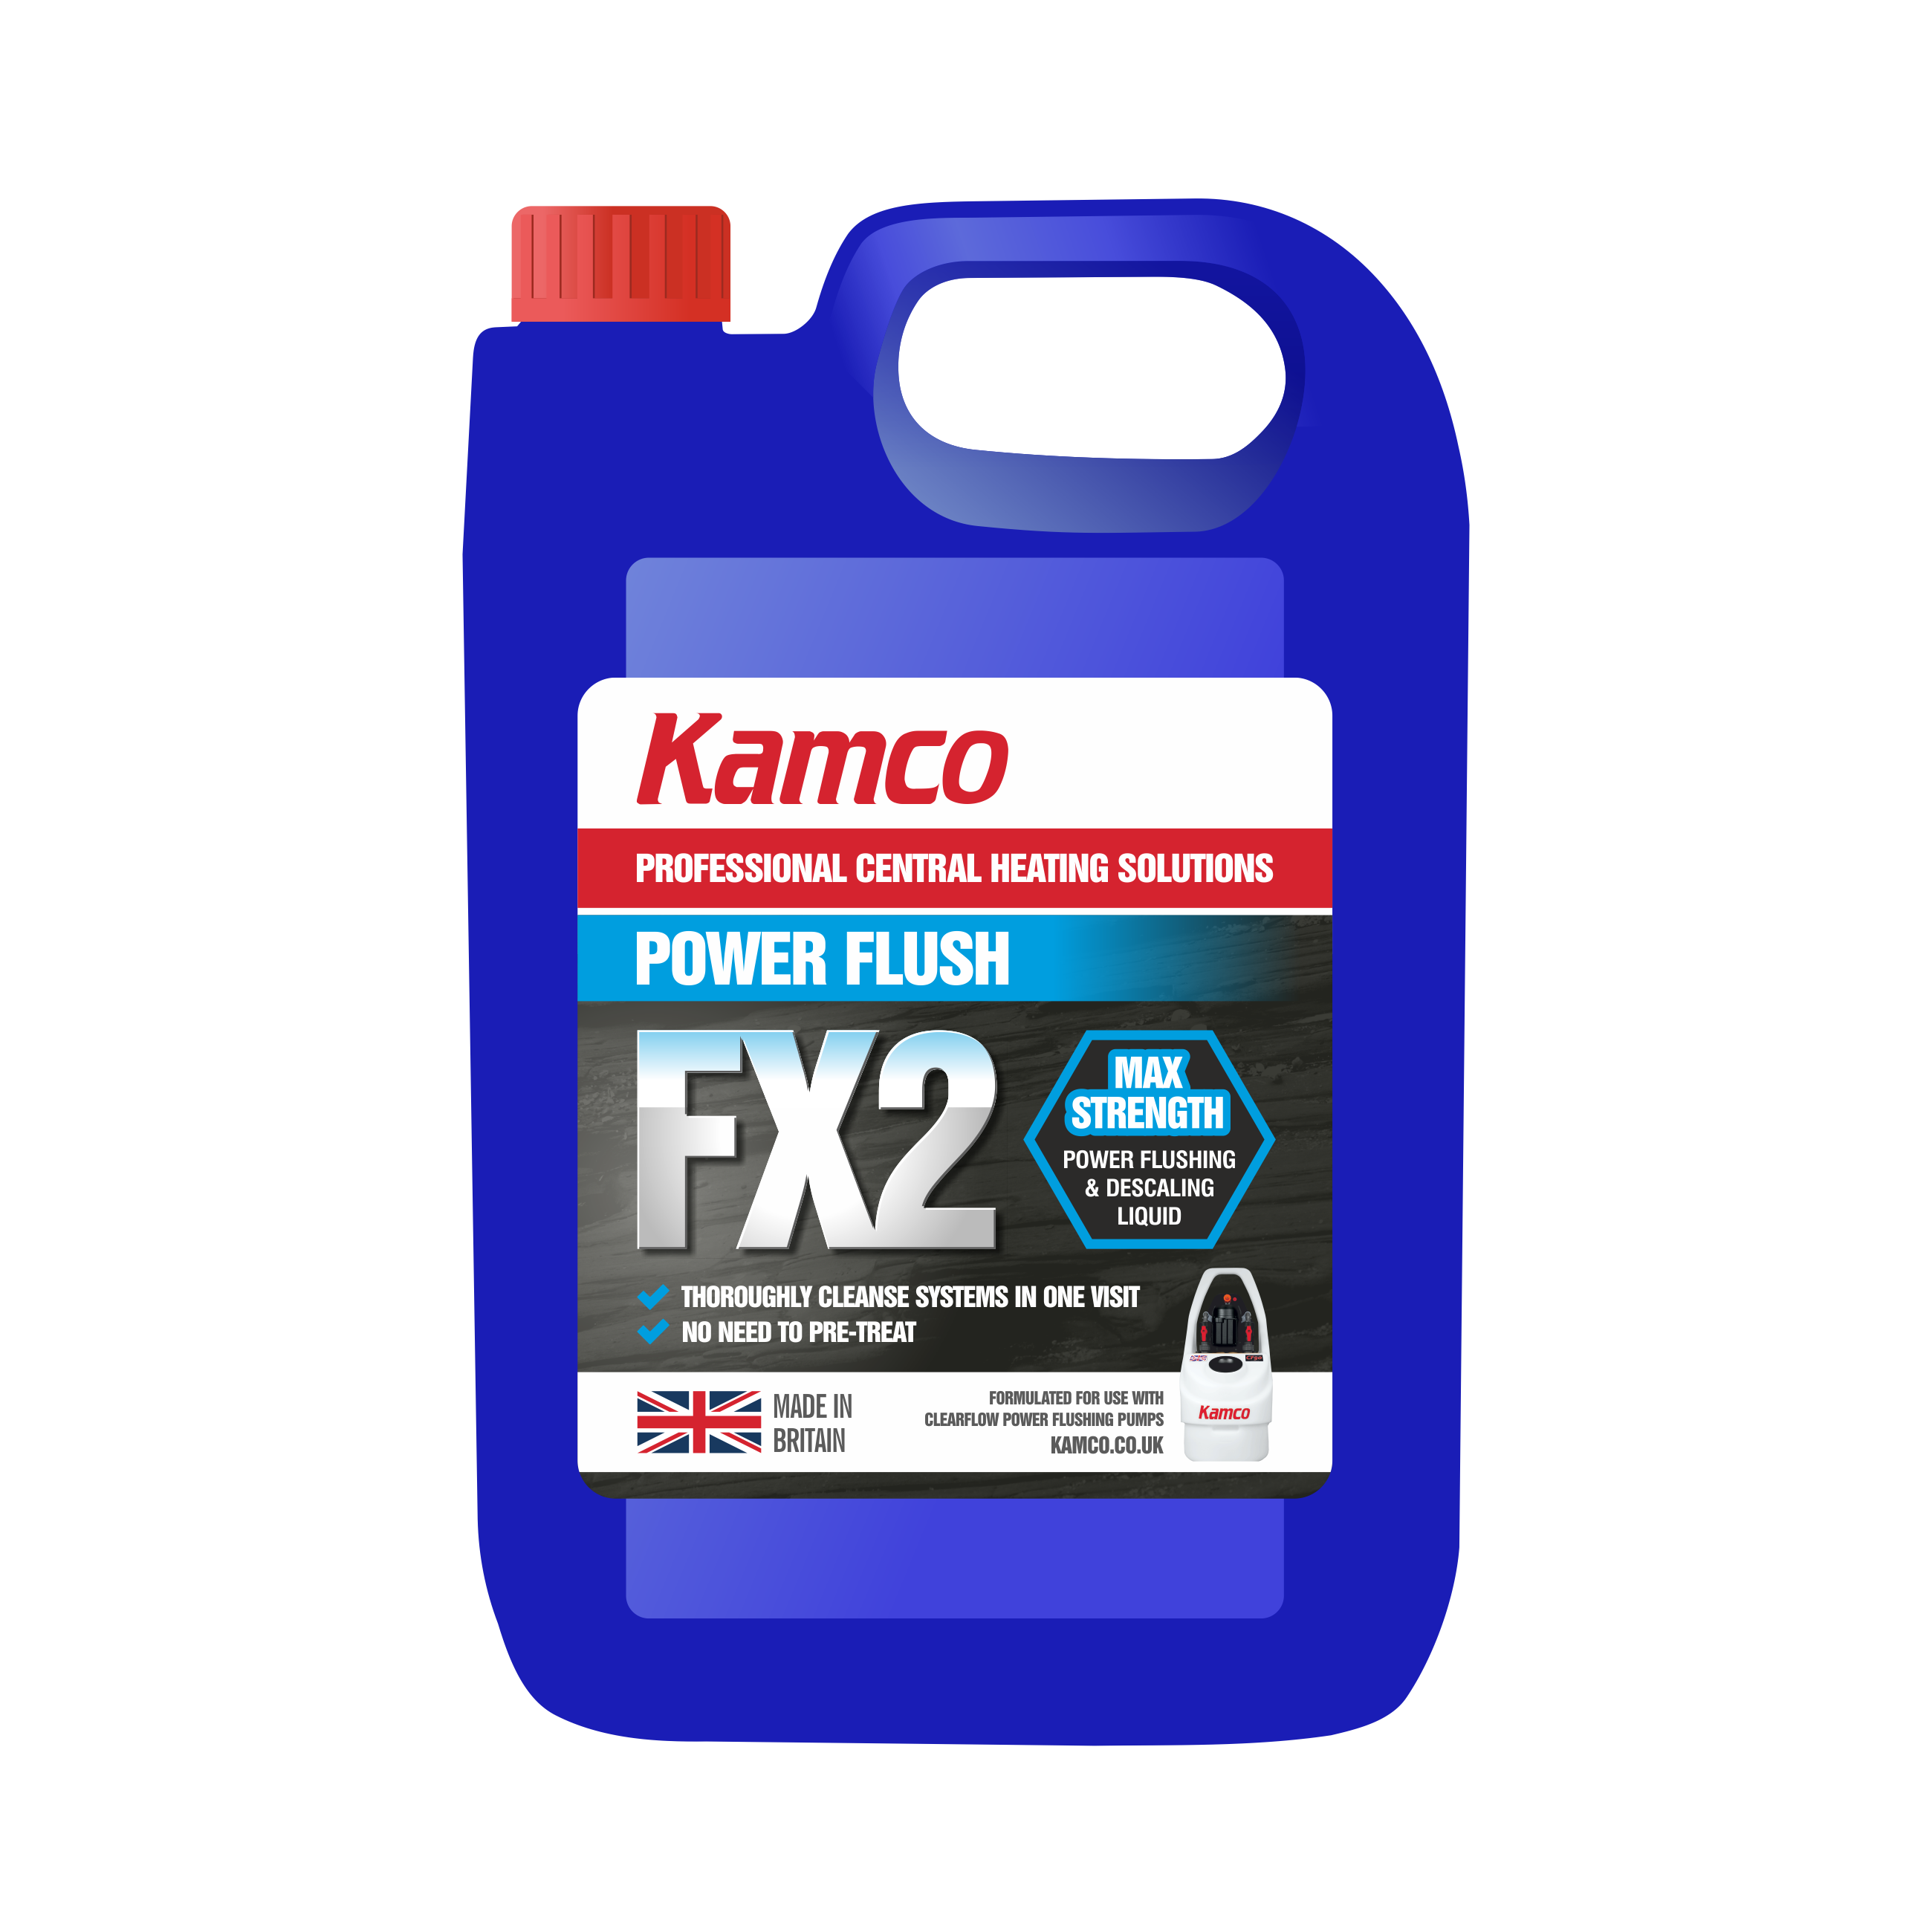 POWER FLUSH FX2 5 LITRE KAMCO OWN BRAND - PFM